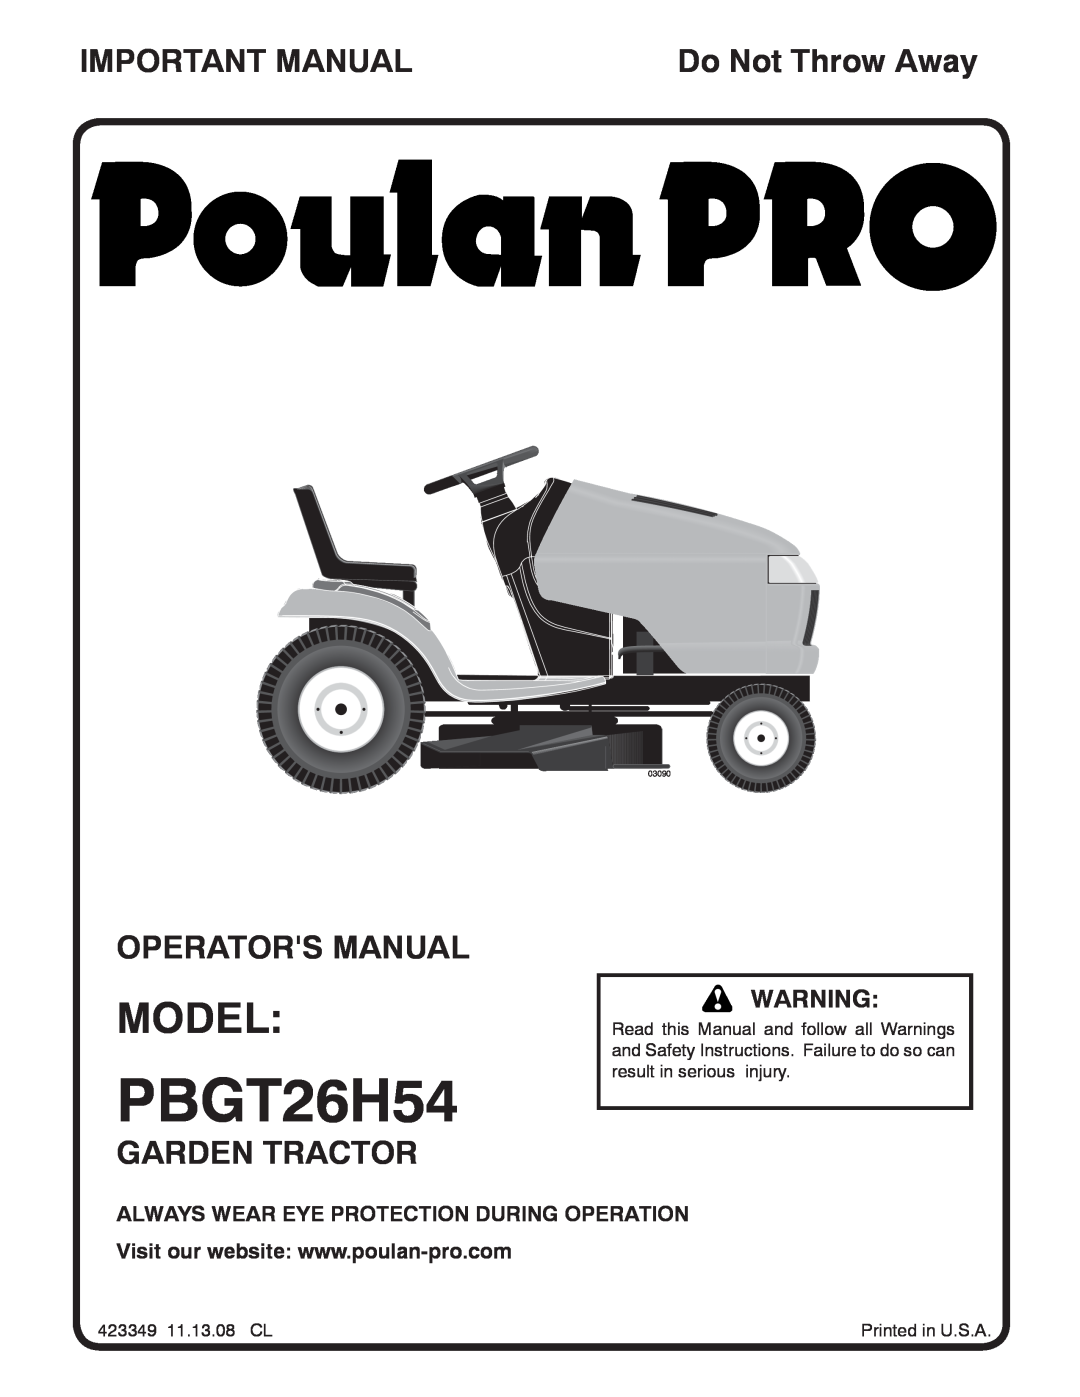 Poulan 423349 manual Model, Important Manual, Operators Manual, Garden Tractor, Do Not Throw Away, PBGT26H54, 03090 